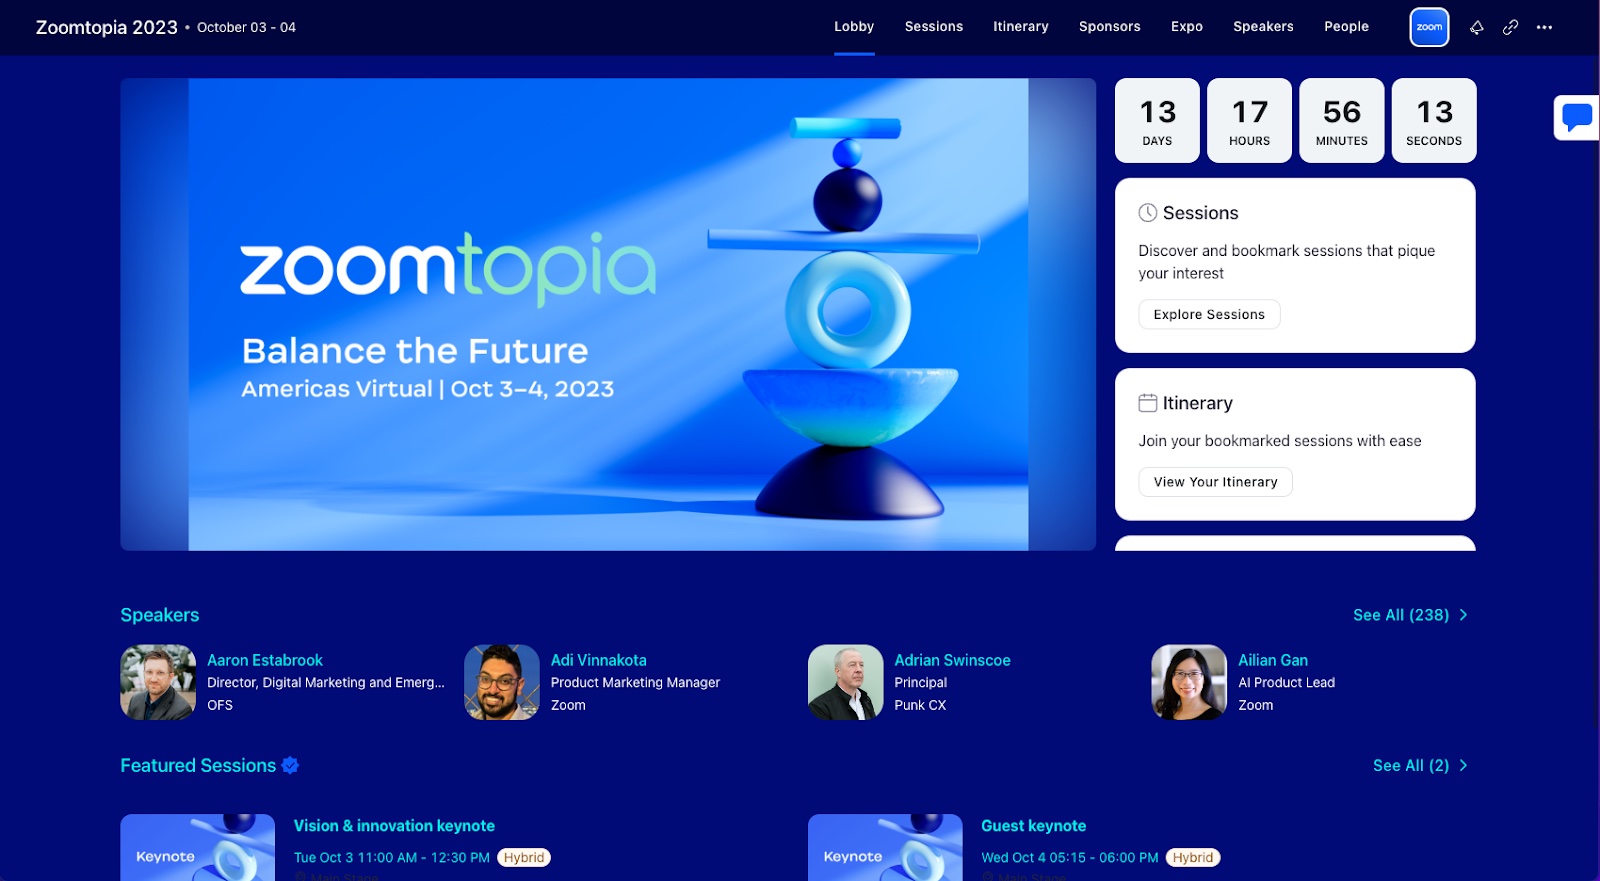 Zoomtopia event website